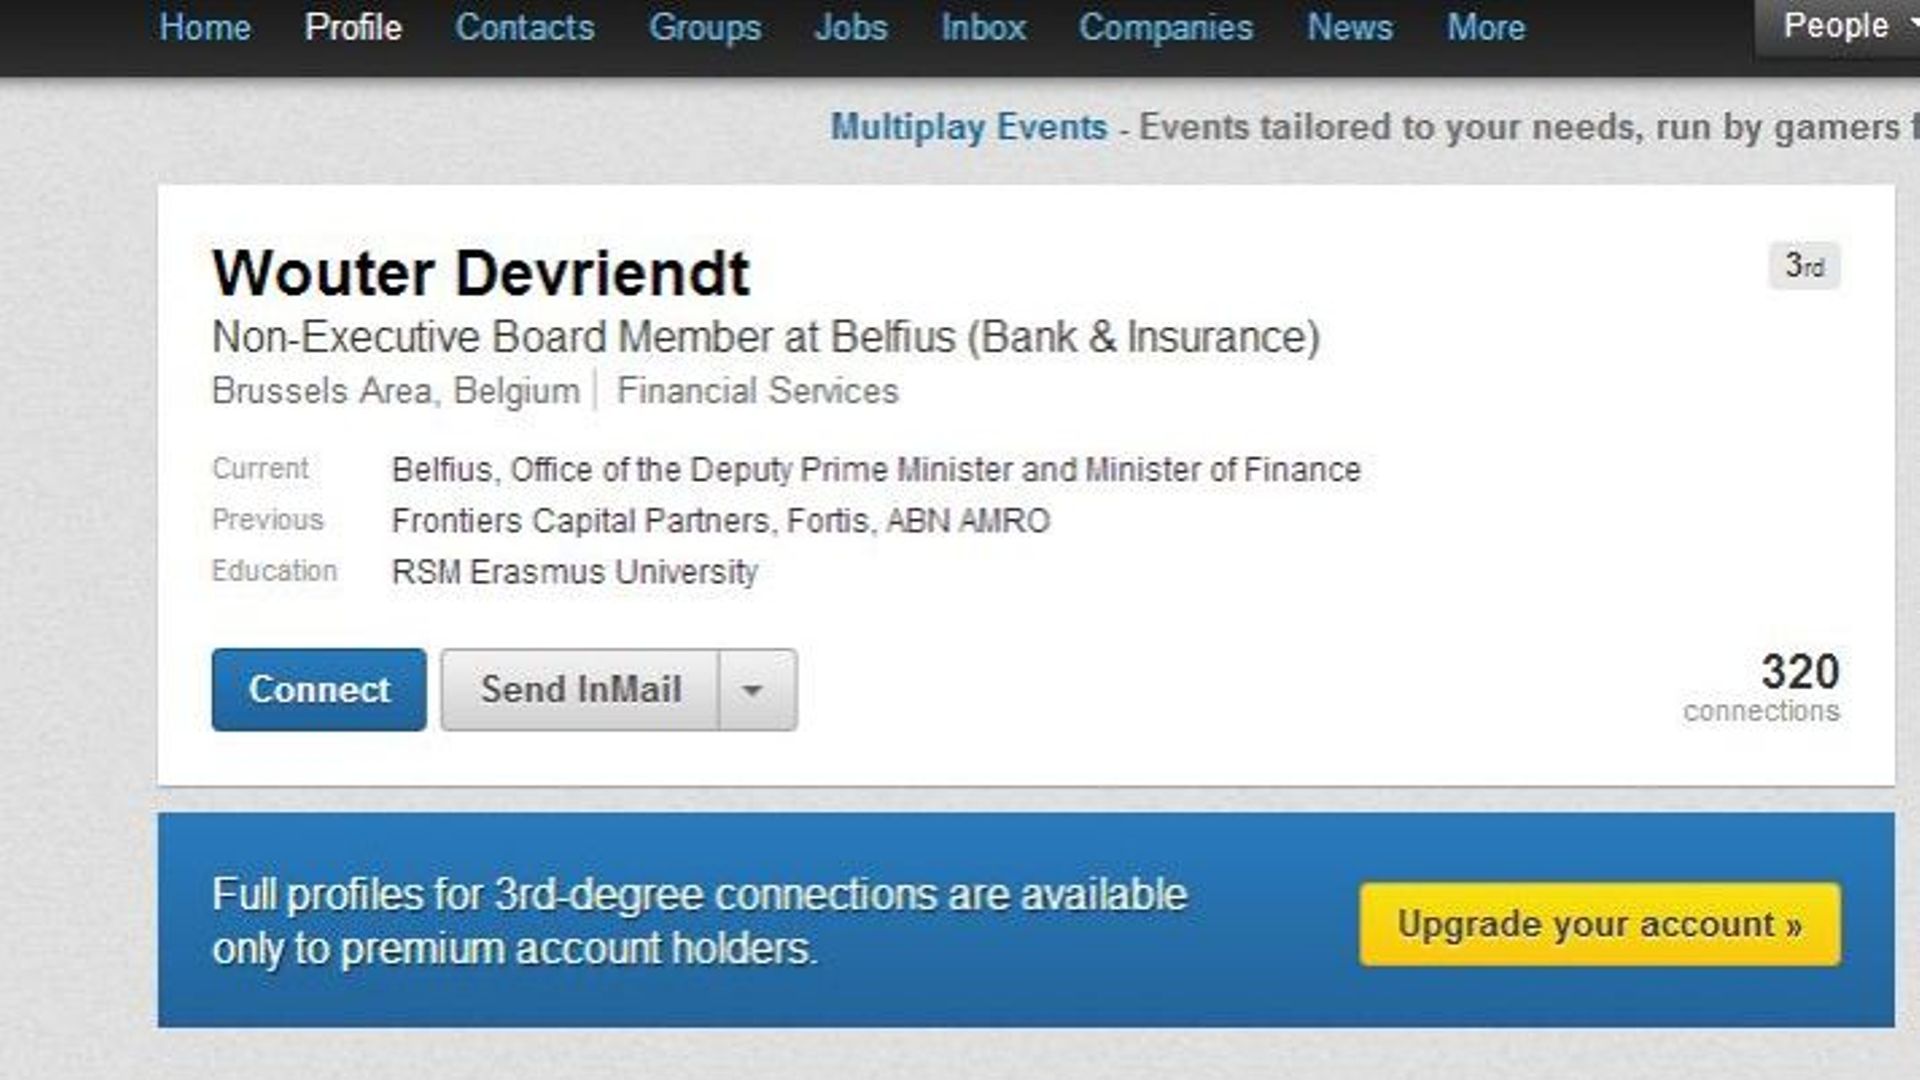 C'est Wouter Devriendt lui-même qui se présente comme membre du CA de Belfius sur son compte LinkedIn